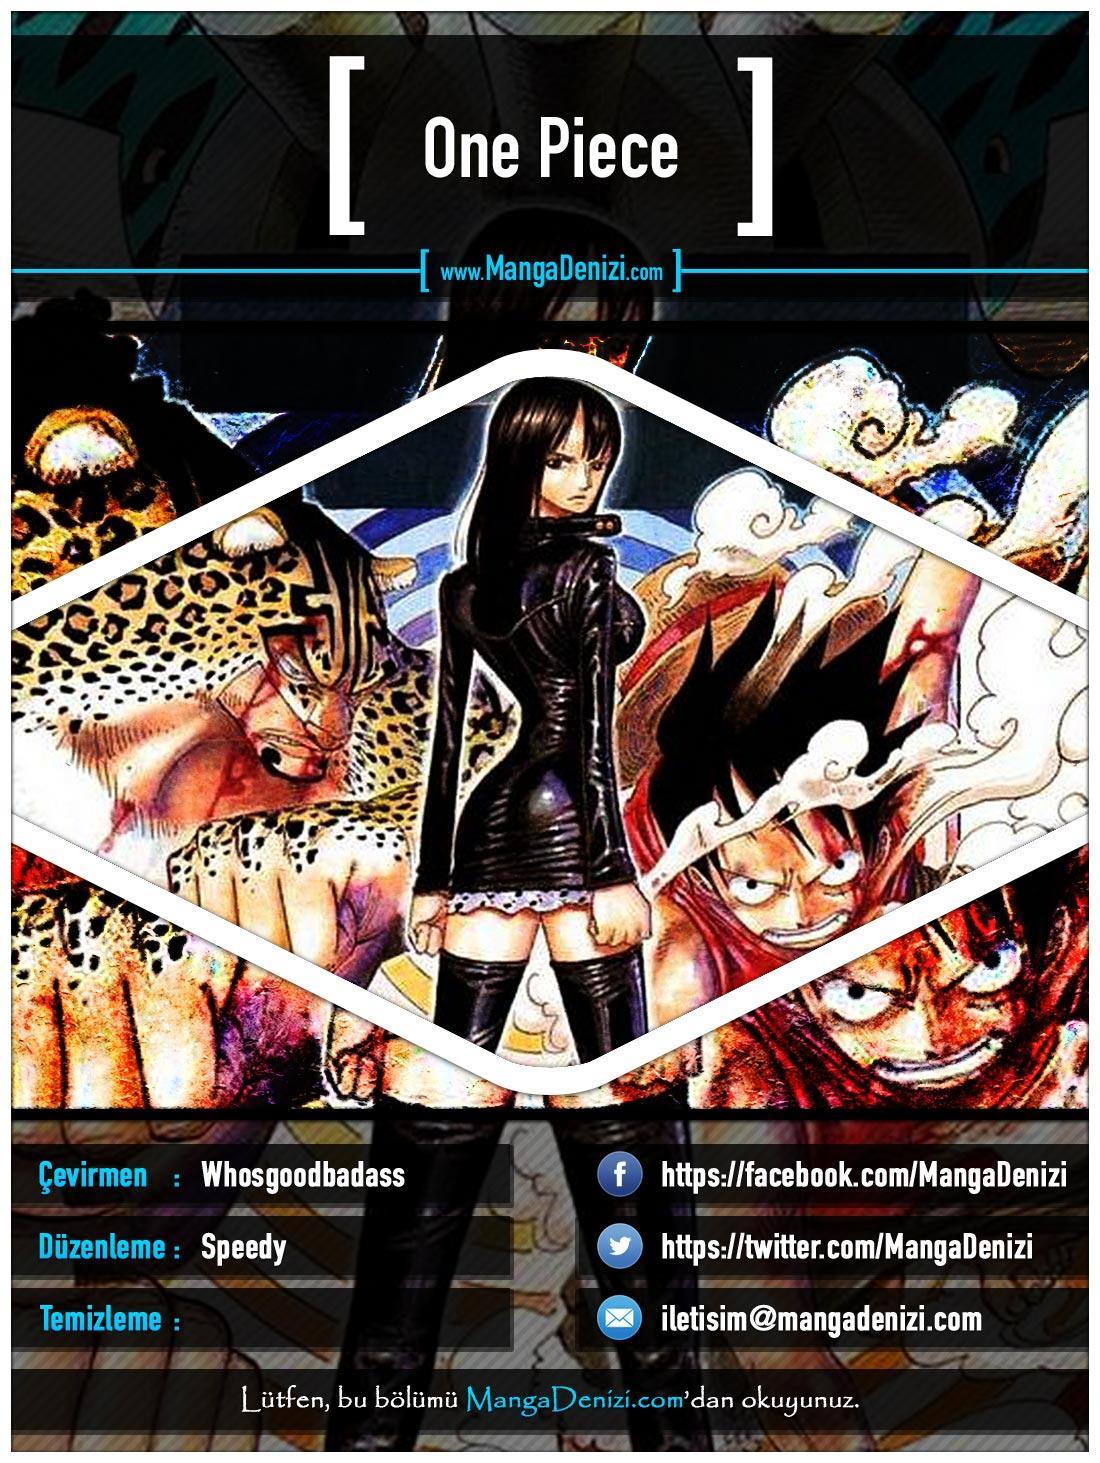 One Piece [Renkli] mangasının 0420 bölümünün 1. sayfasını okuyorsunuz.